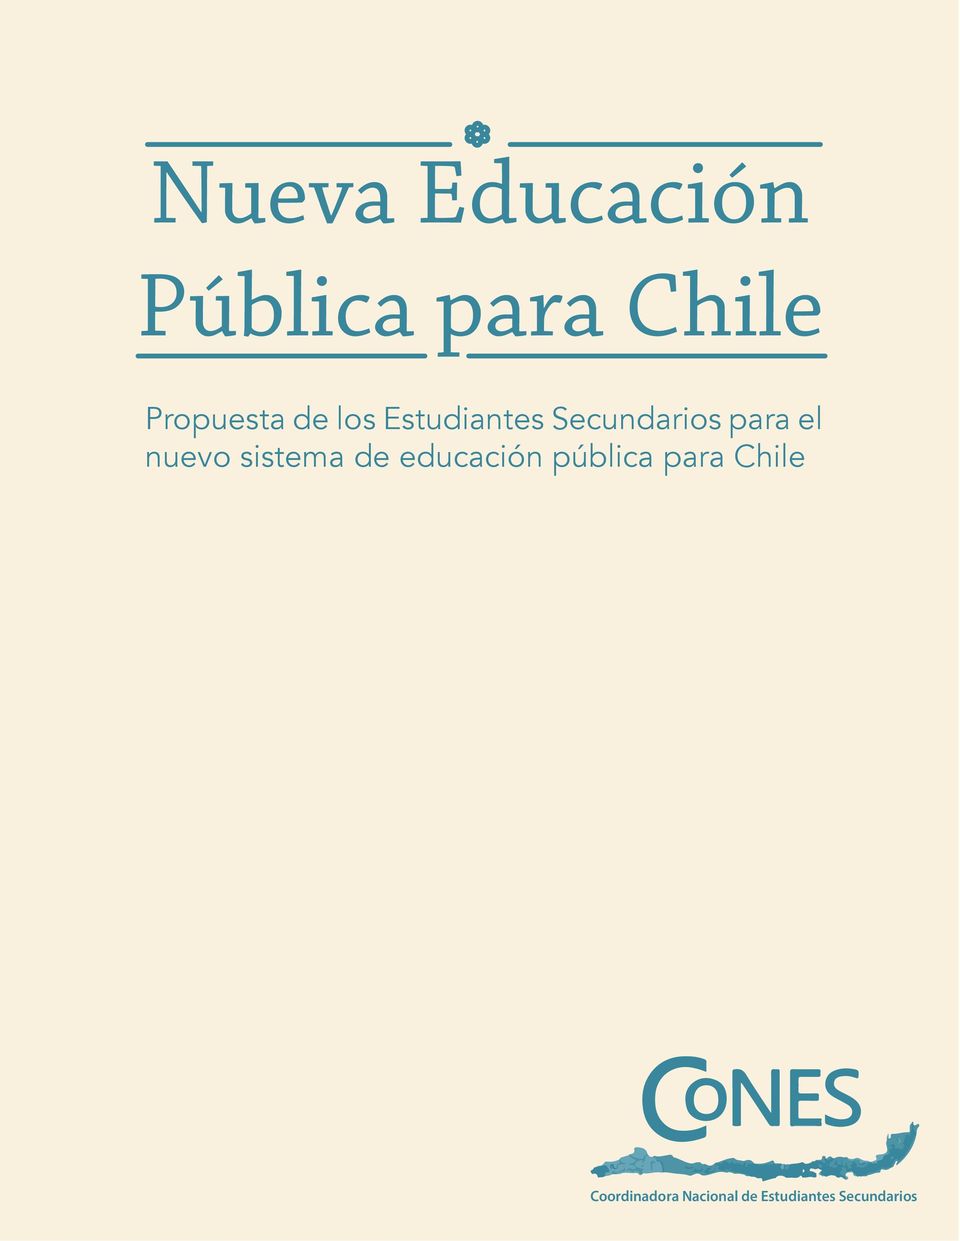 sistema de educación pública para Chile